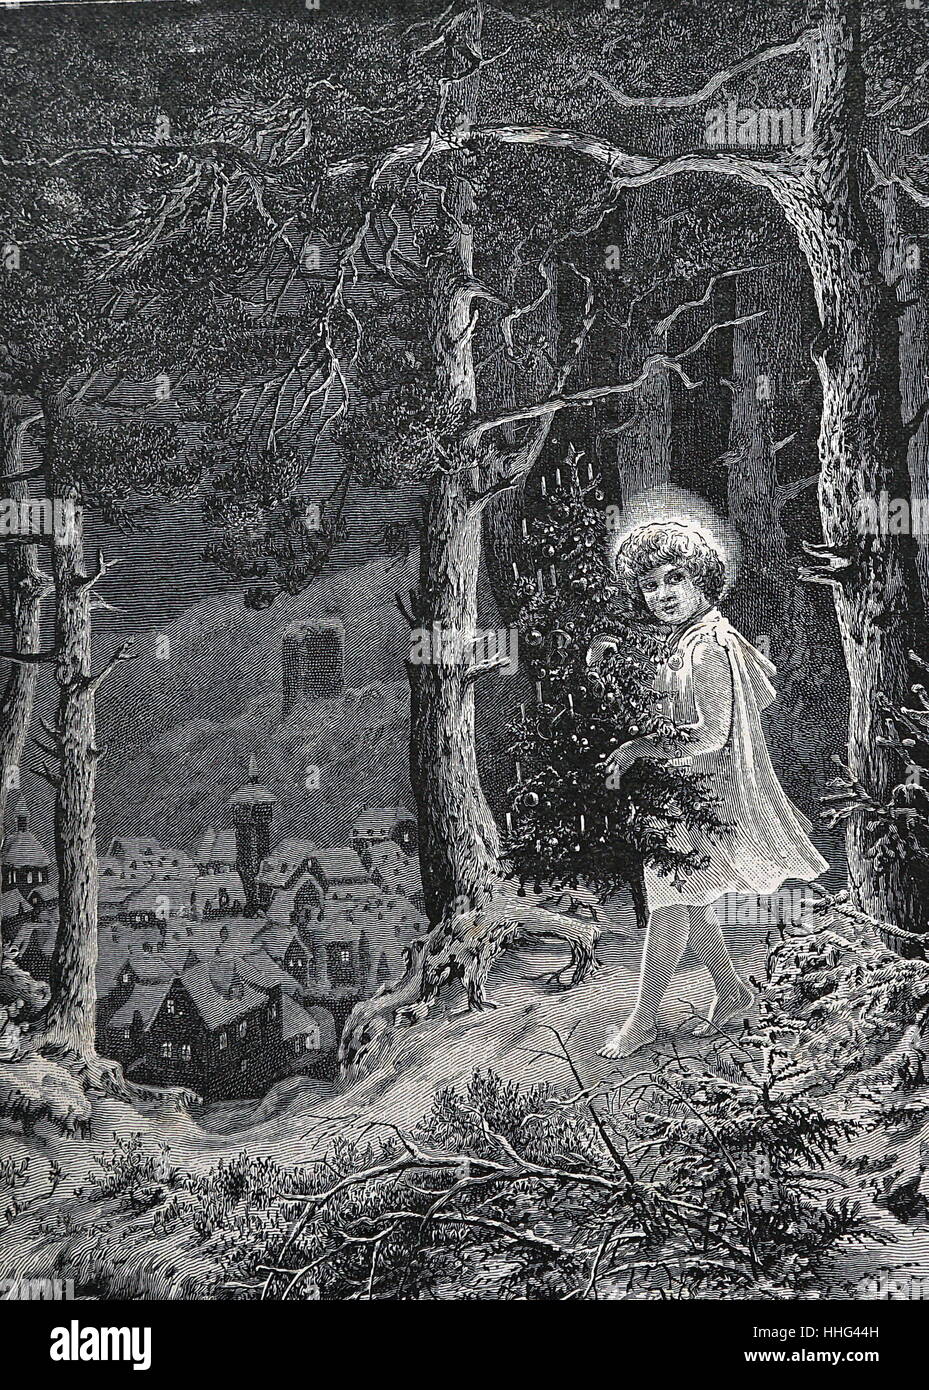 Abbildung in eine Englische Veröffentlichung, ein himmlisches Kind, Abbildung mit einem geschmückten Weihnachtsbaum durch einen Wald auf dem Weg zu einem Dorf. 1891 Stockfoto